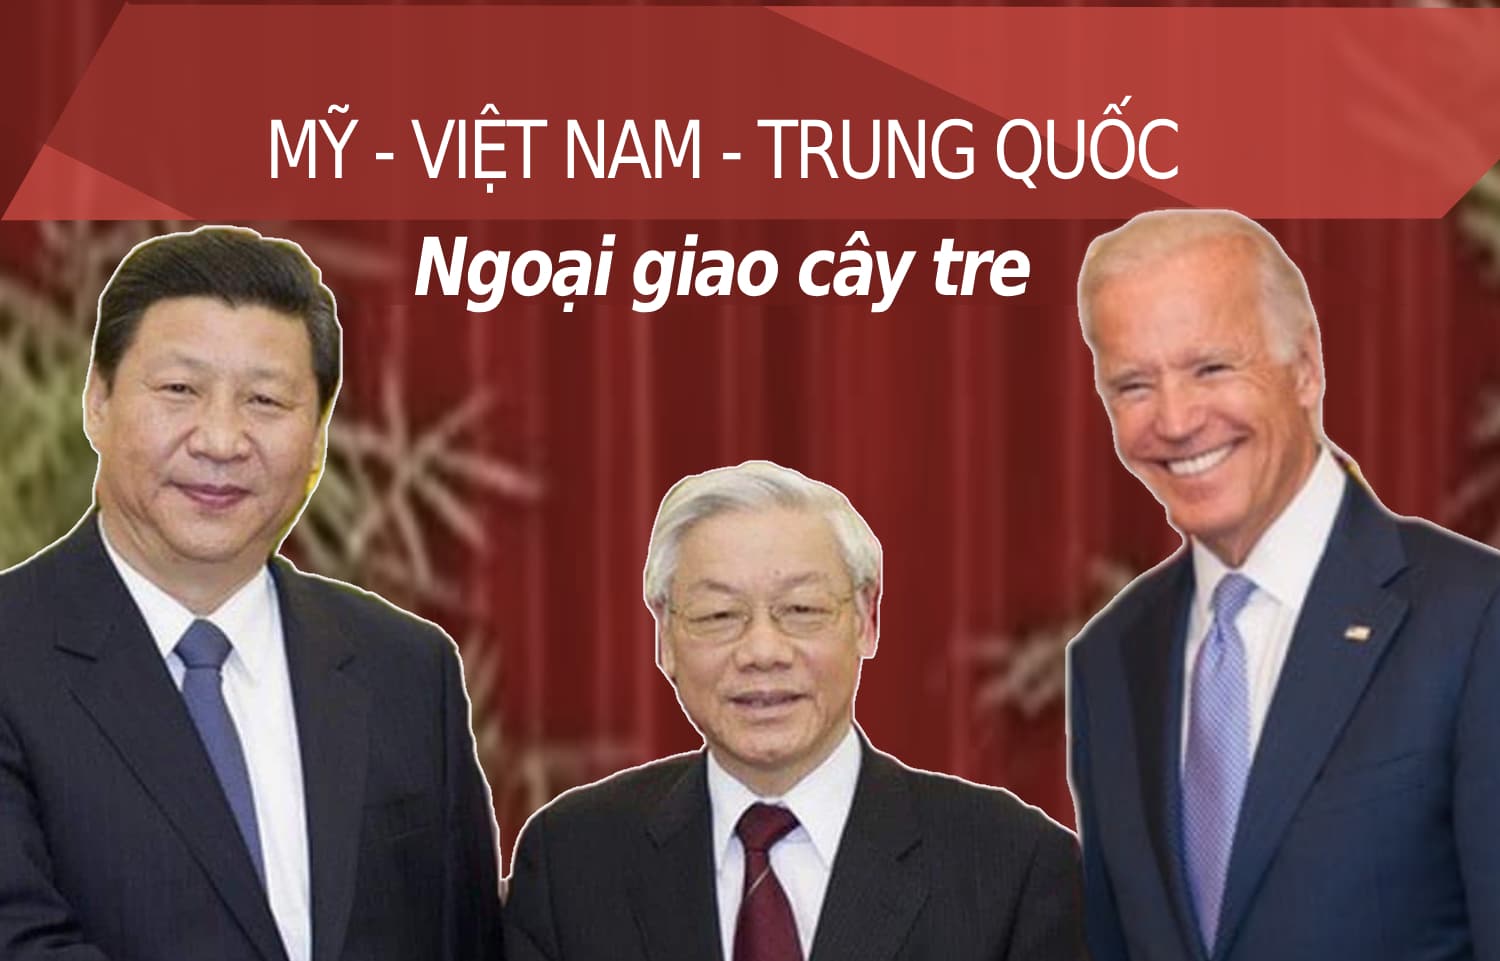 'Ngoại giao cây tre' của Việt Nam sẽ kiên trì được bao lâu?